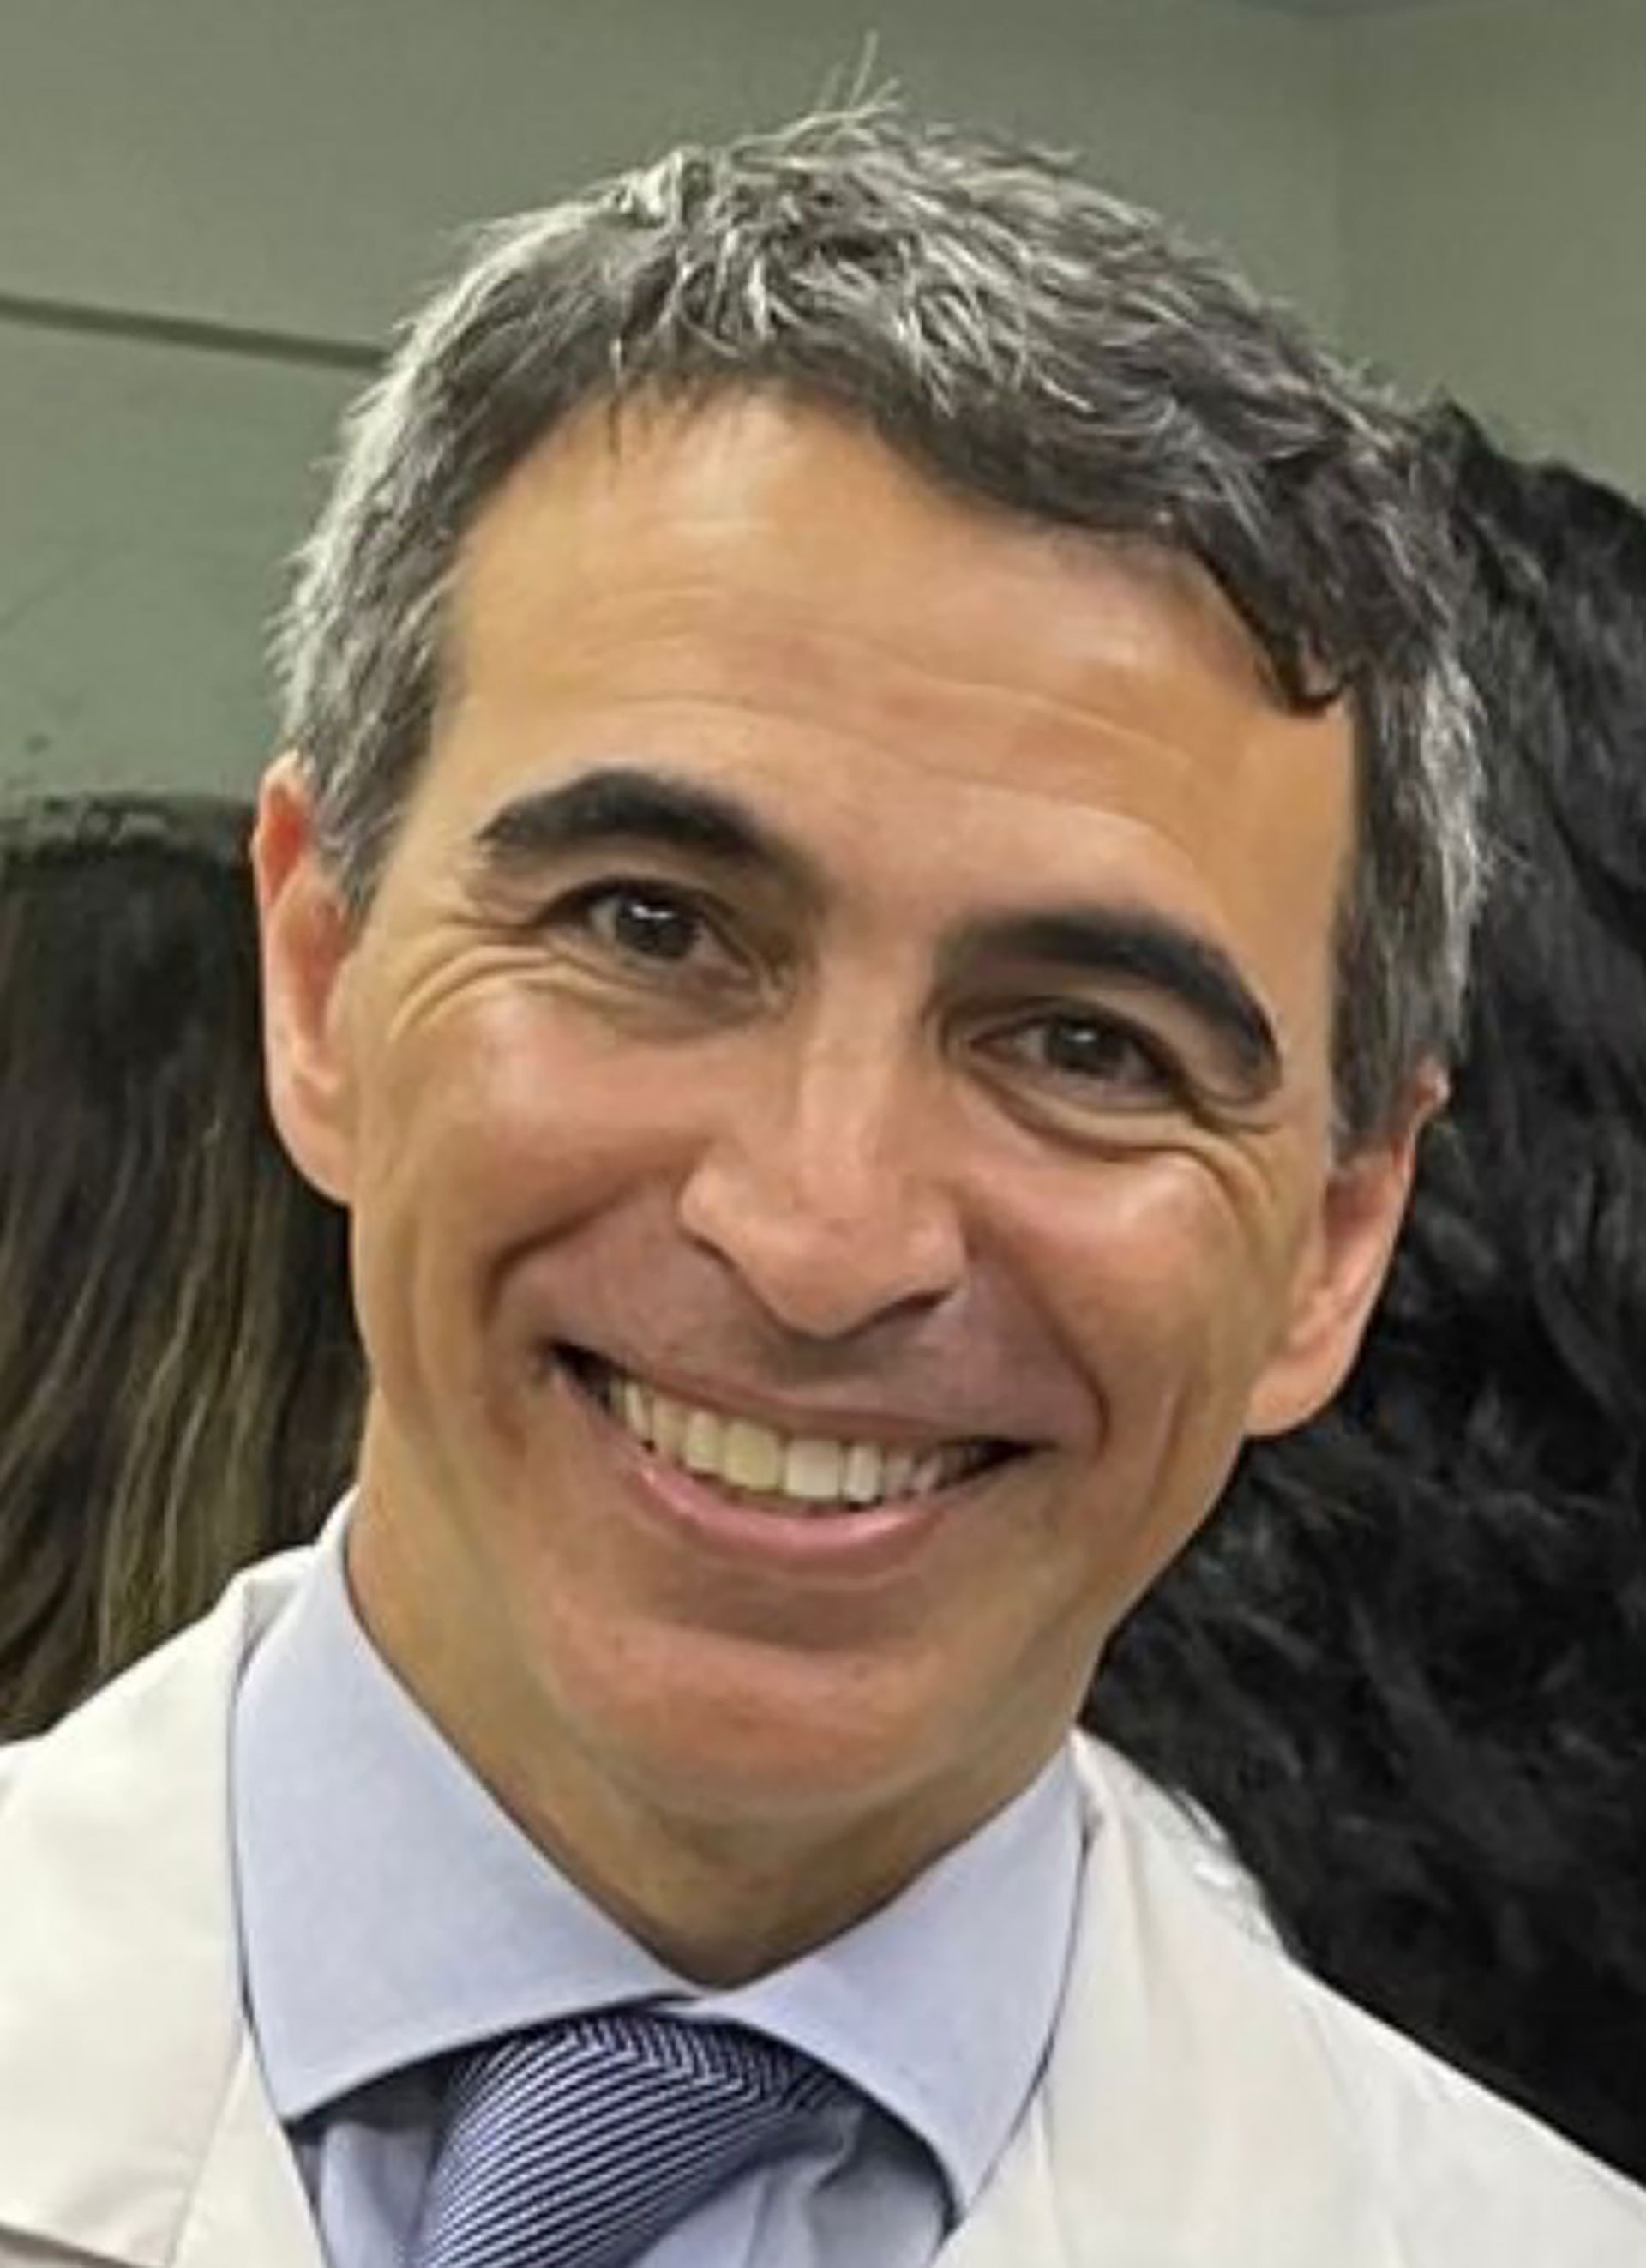 Damián Ferrario es médico dermatólogo especialista en oncología cutánea del Hospital Italiano de Buenos Aires